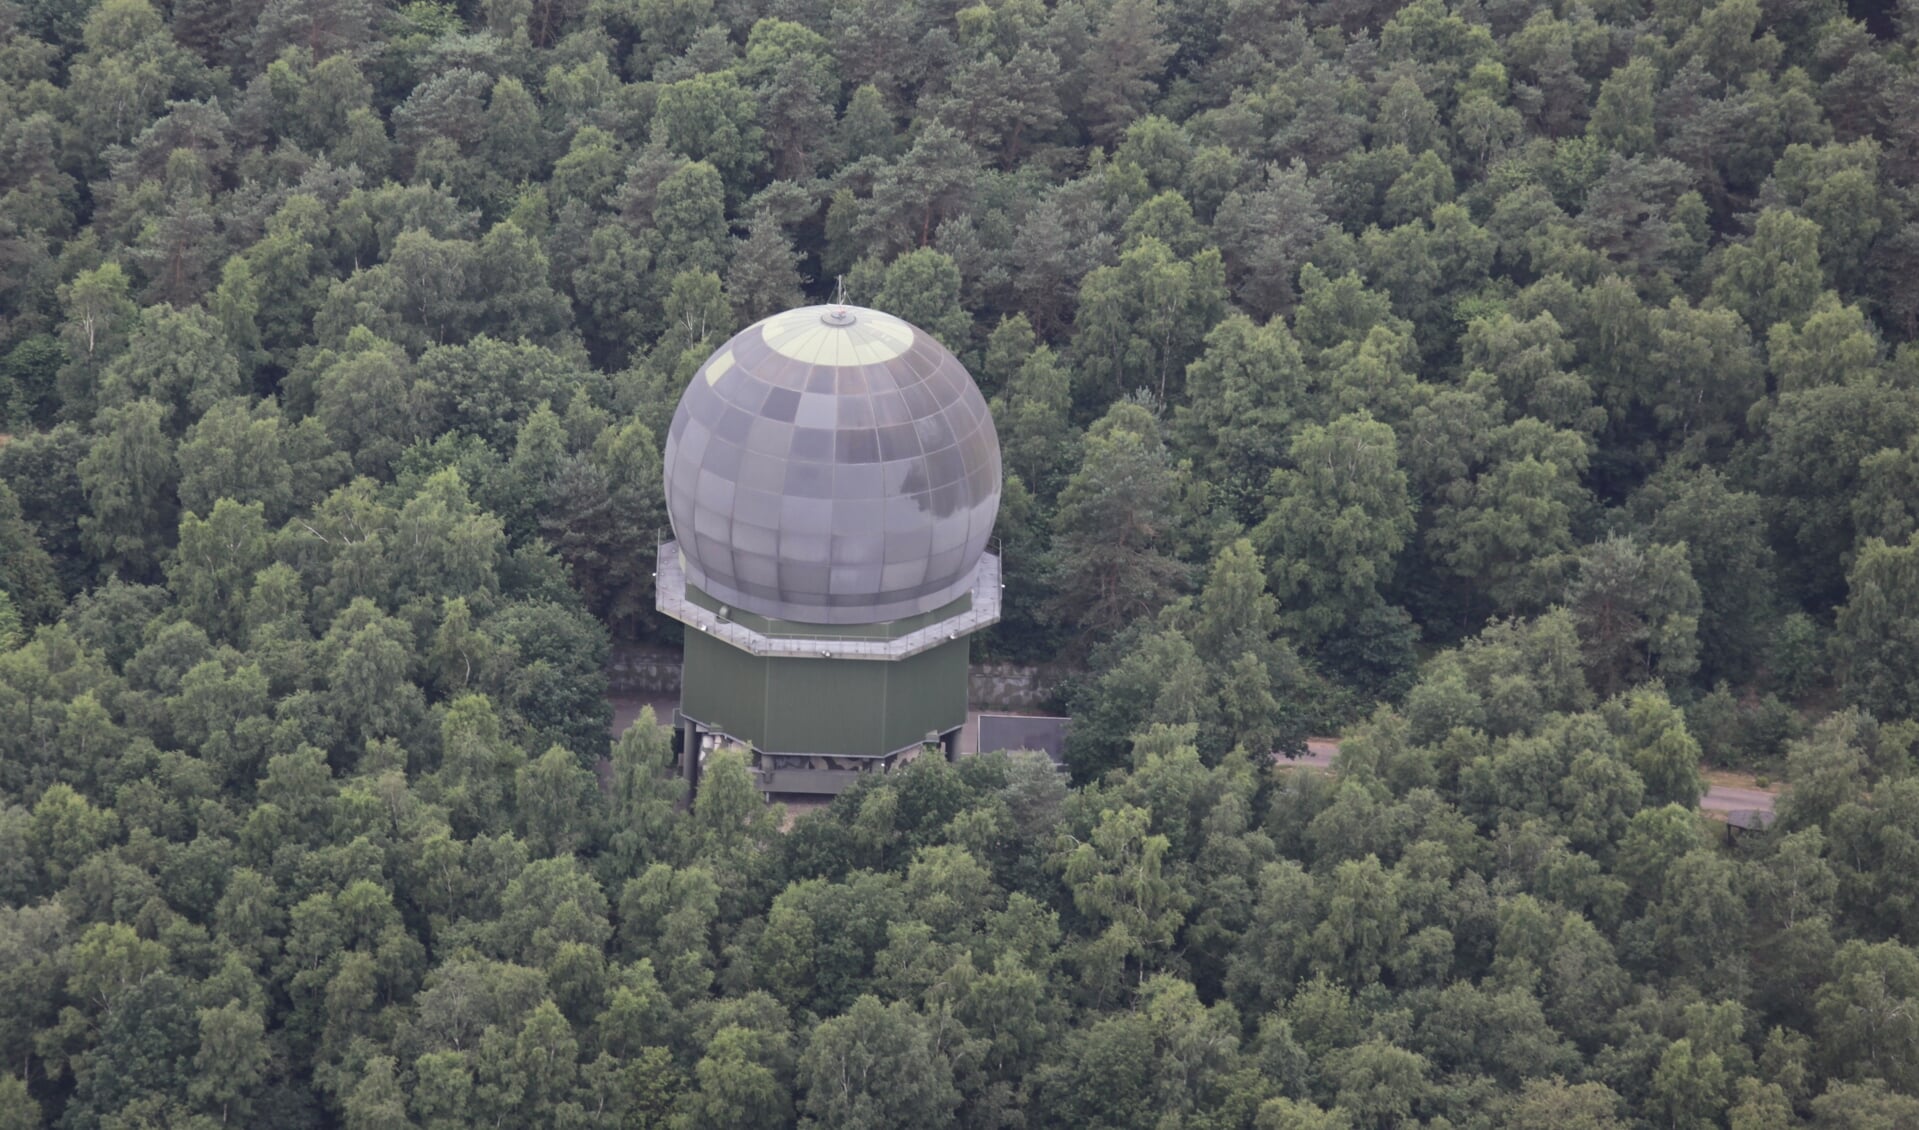 De radar van Defensie, in de bossen bij Garderen.